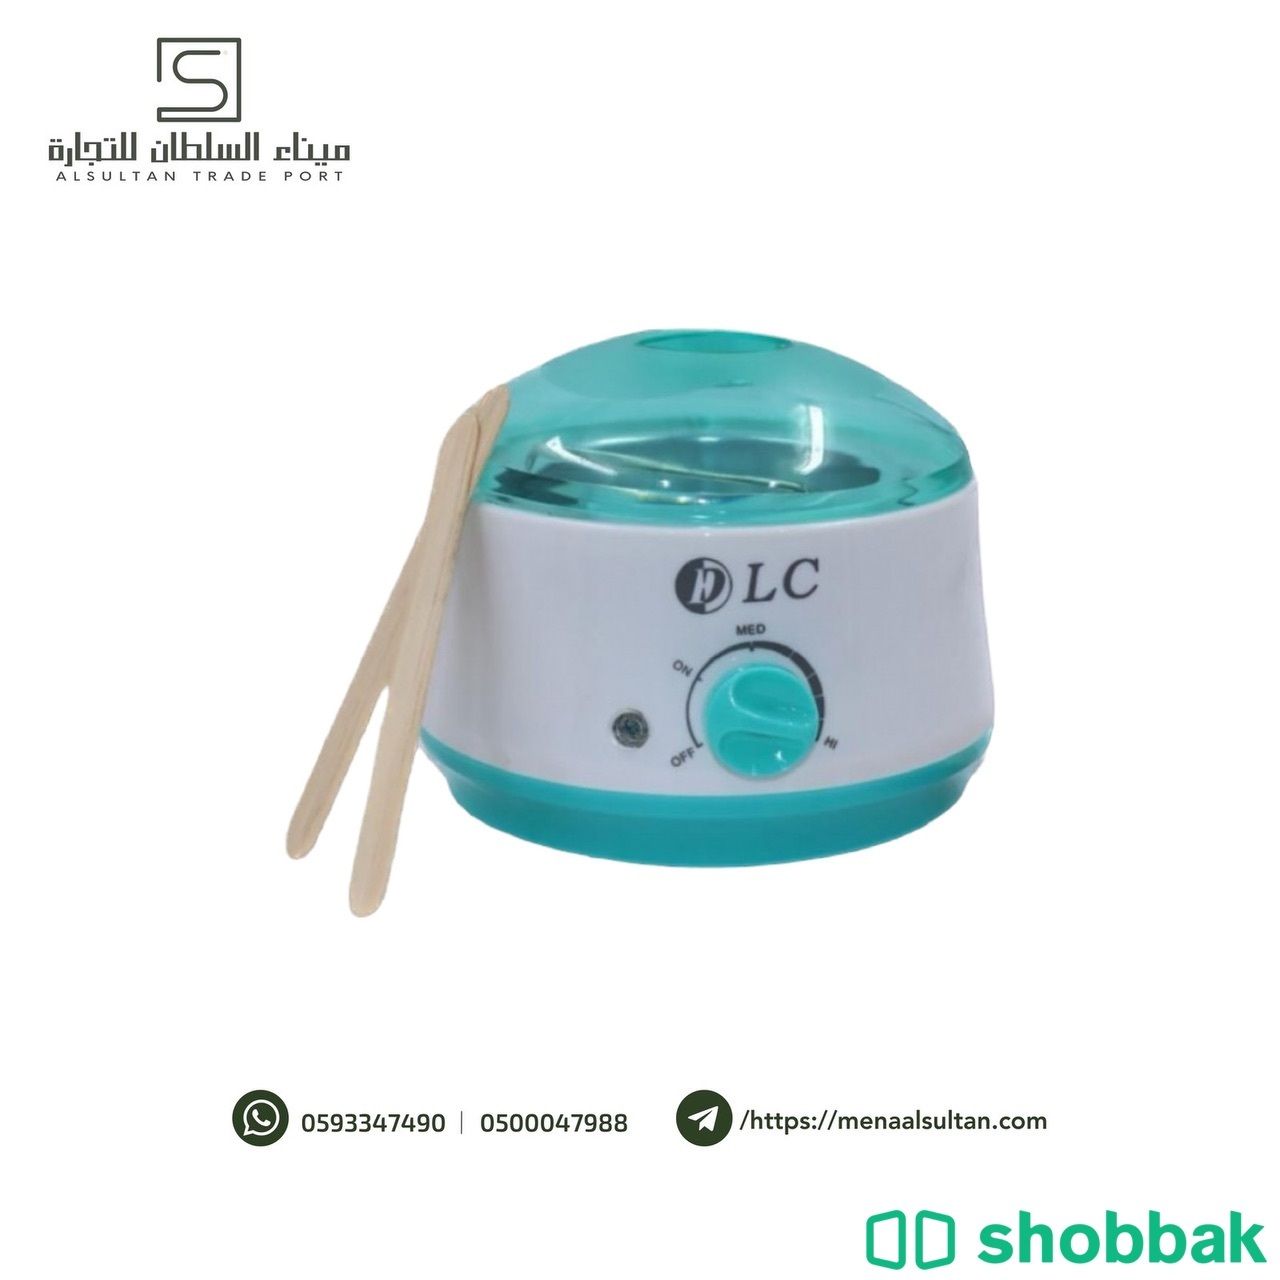 جهاز سخان الشمع Wax melter Shobbak Saudi Arabia